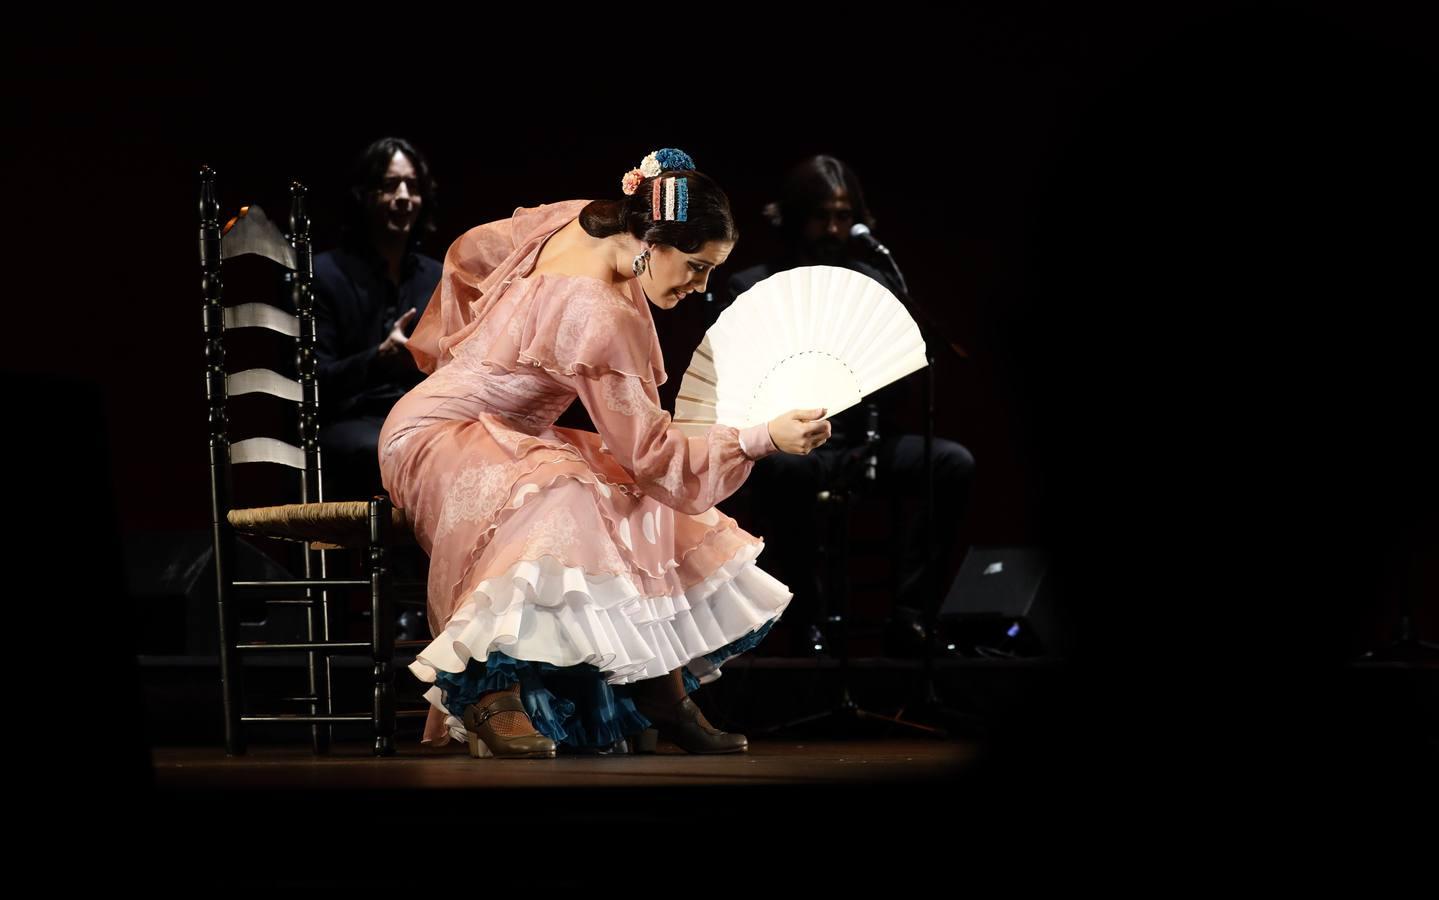 La última final del Concurso Nacional de Arte Flamenco, en imágenes